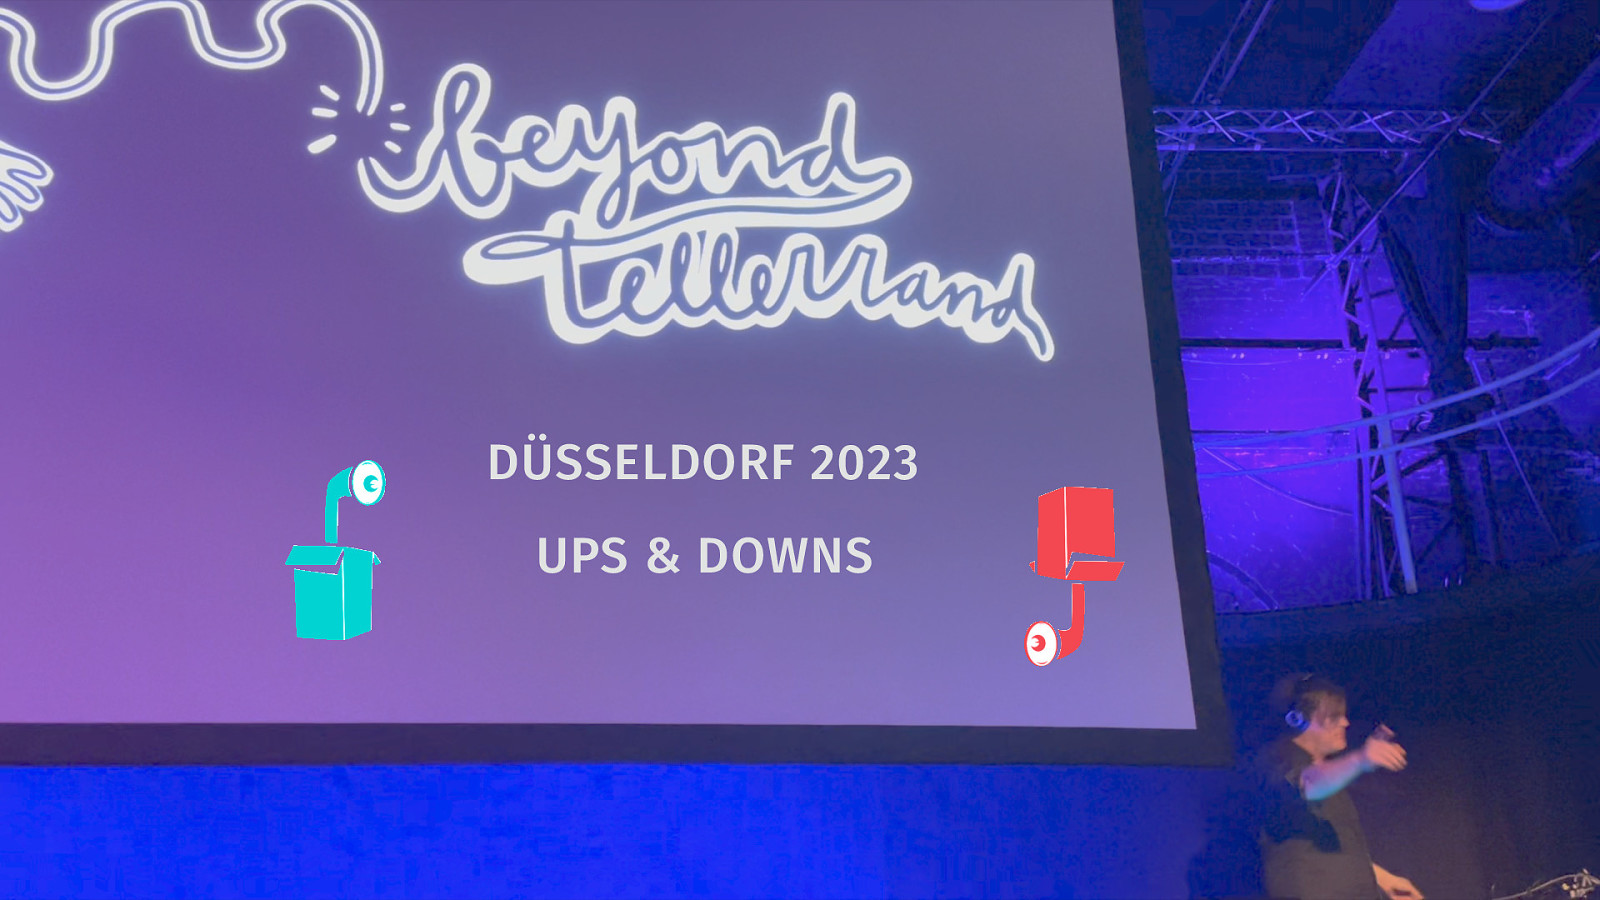 Ups & Downs from beyond tellerrand // Düsseldorf 2023